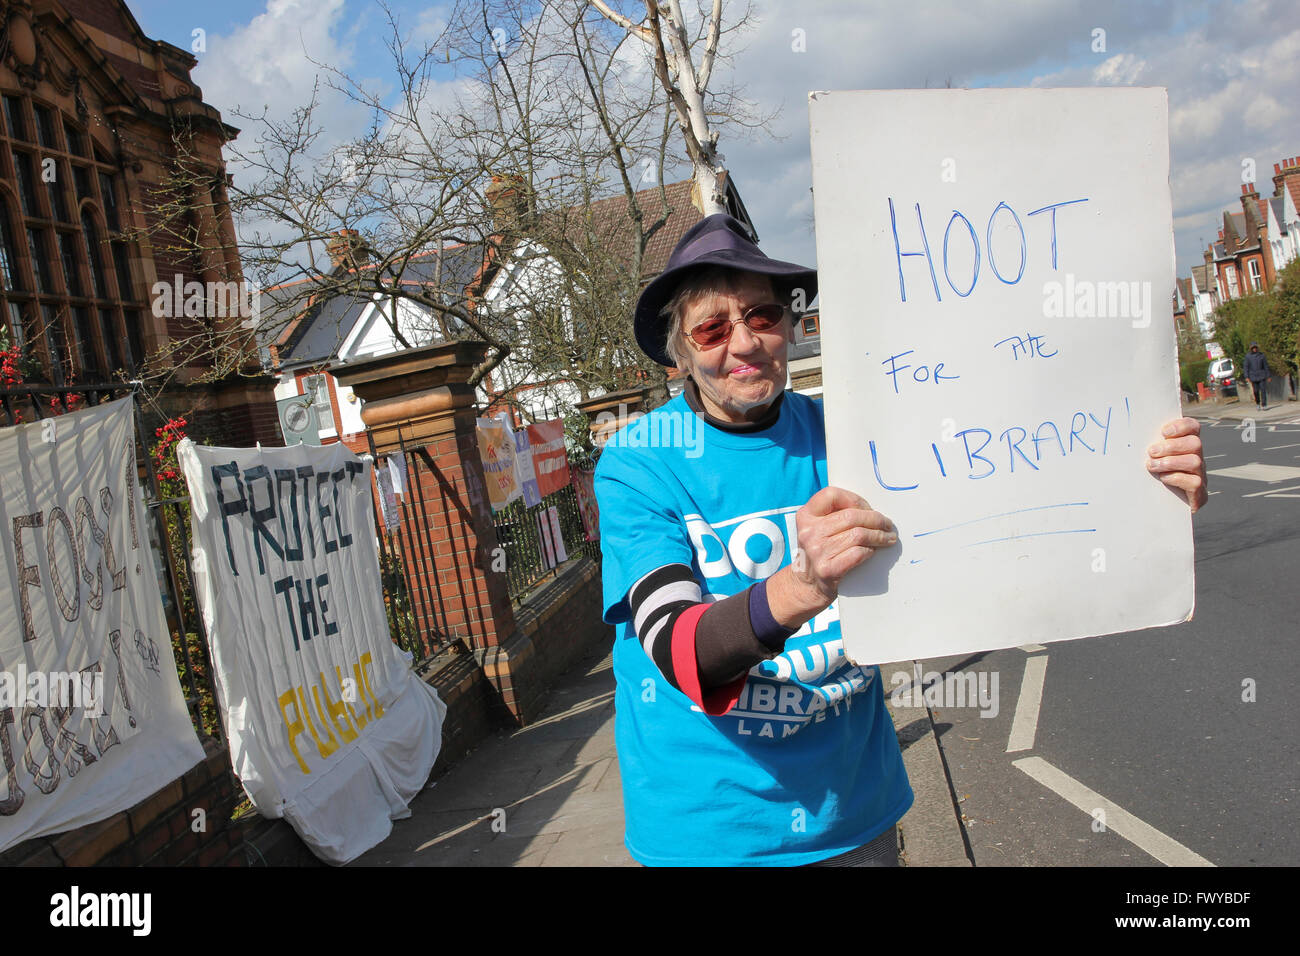 Huée pour la bibliothèque ! Militants contre la fermeture par le Conseil de Lambeth de la Bibliothèque Carnegie à Herne Hill, dans le sud de Londres. Banque D'Images